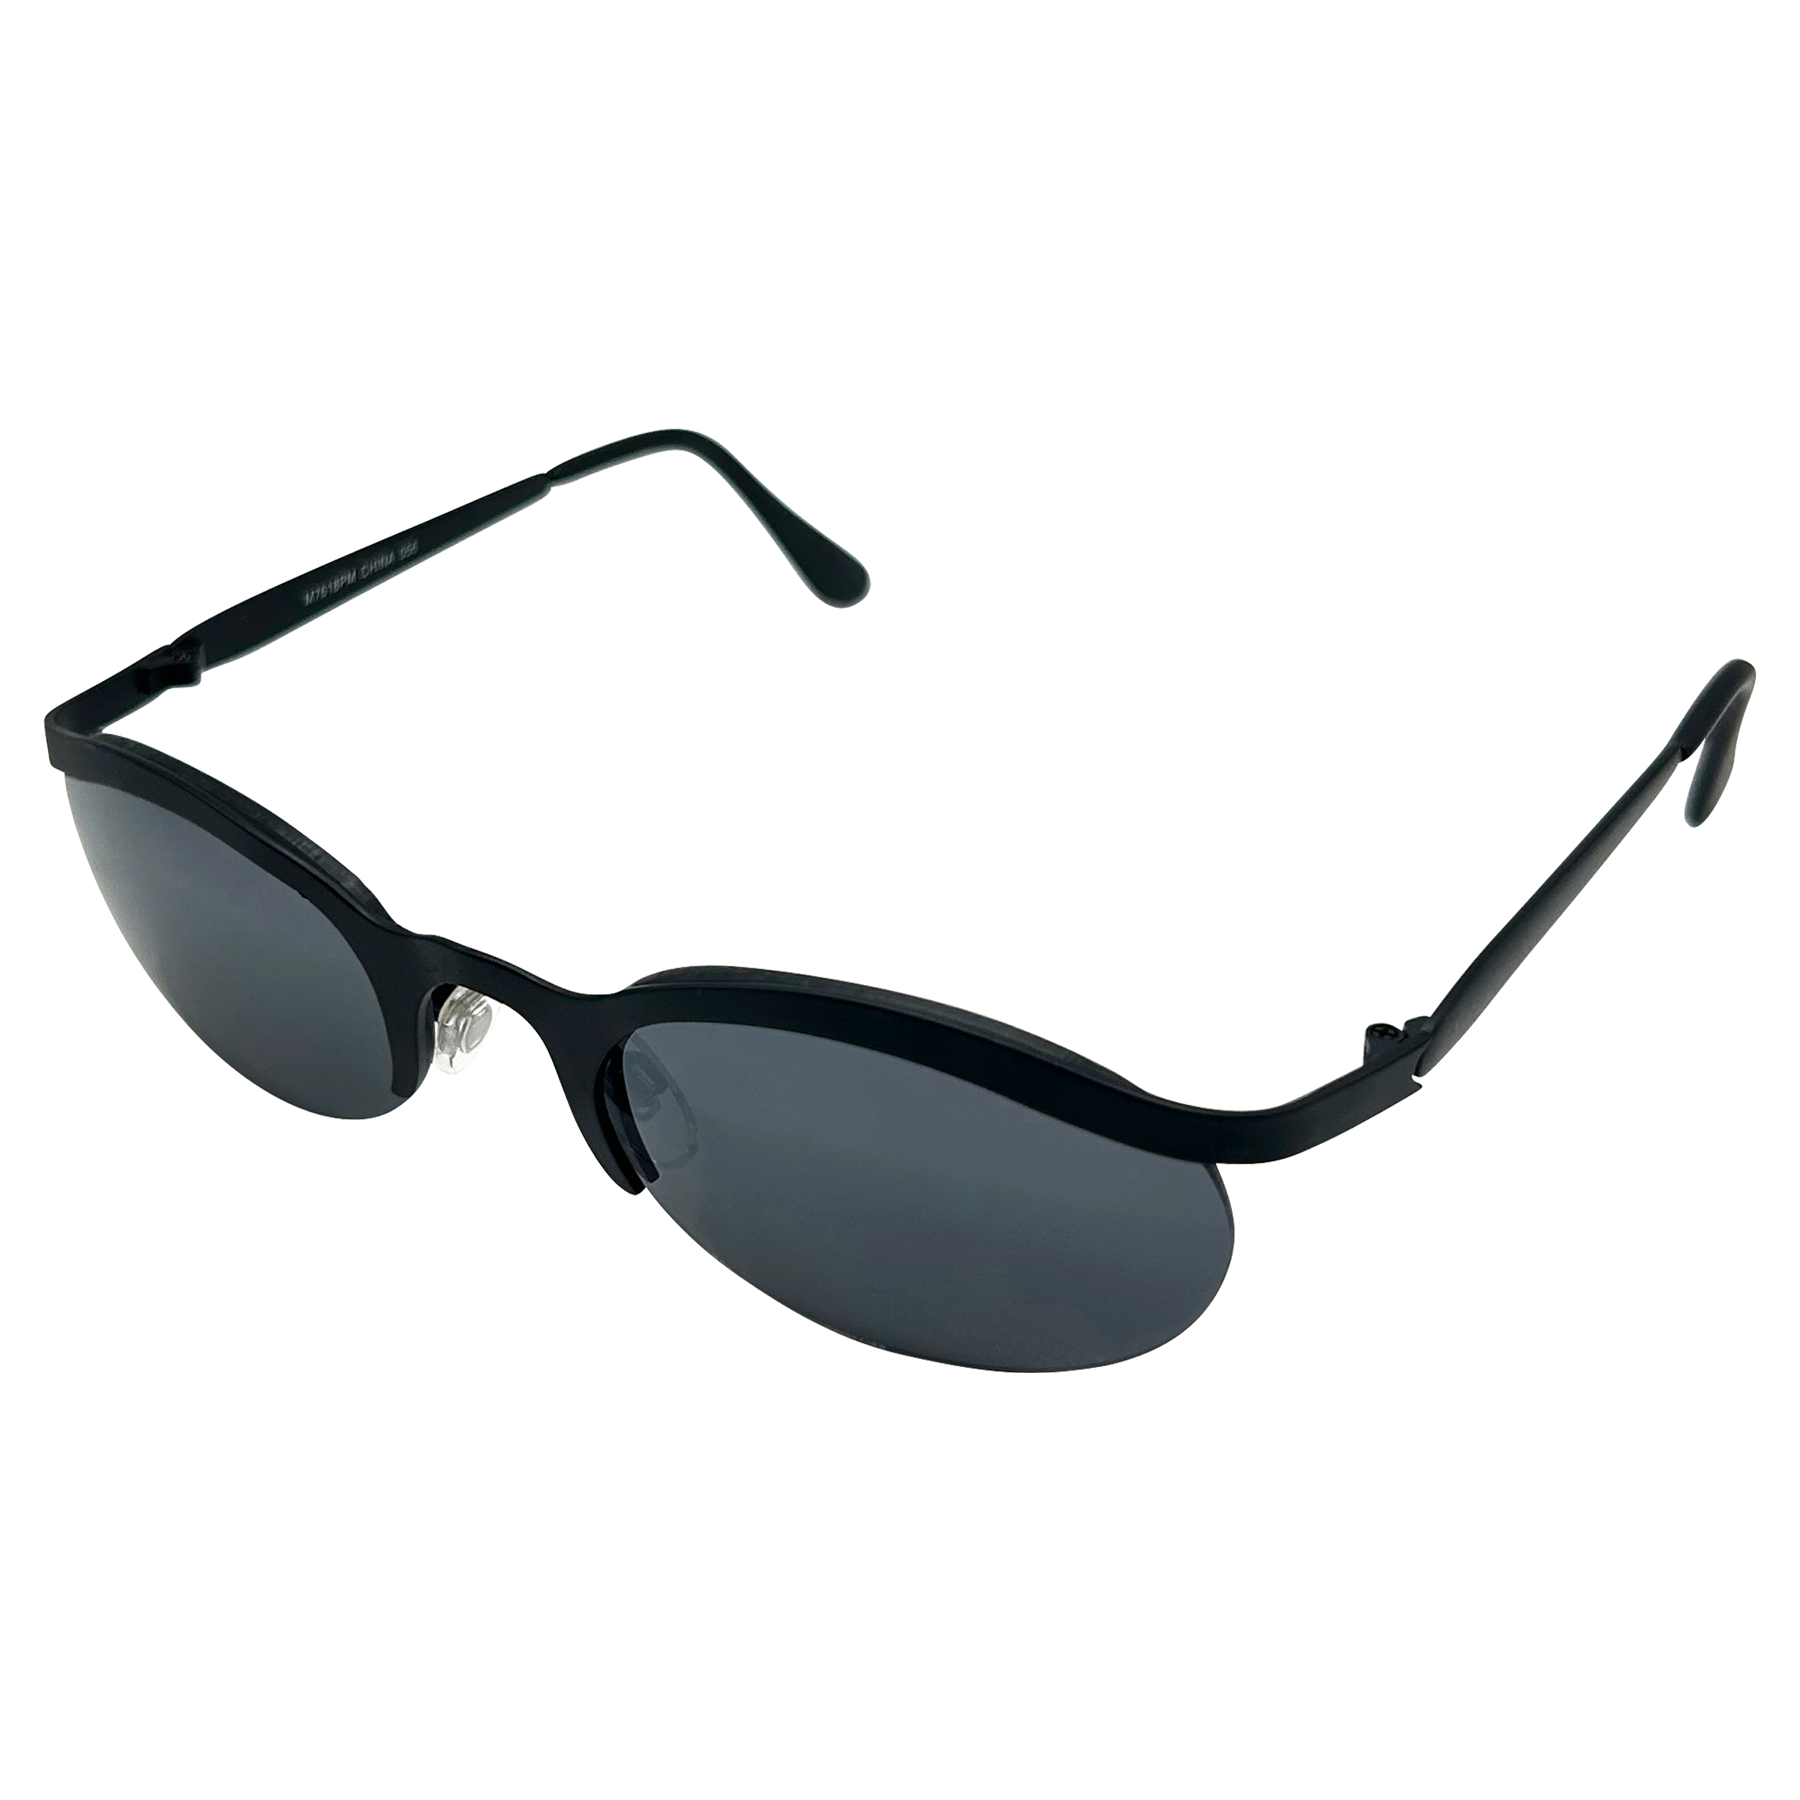 ZAP Steampunk 90s Sunglasses